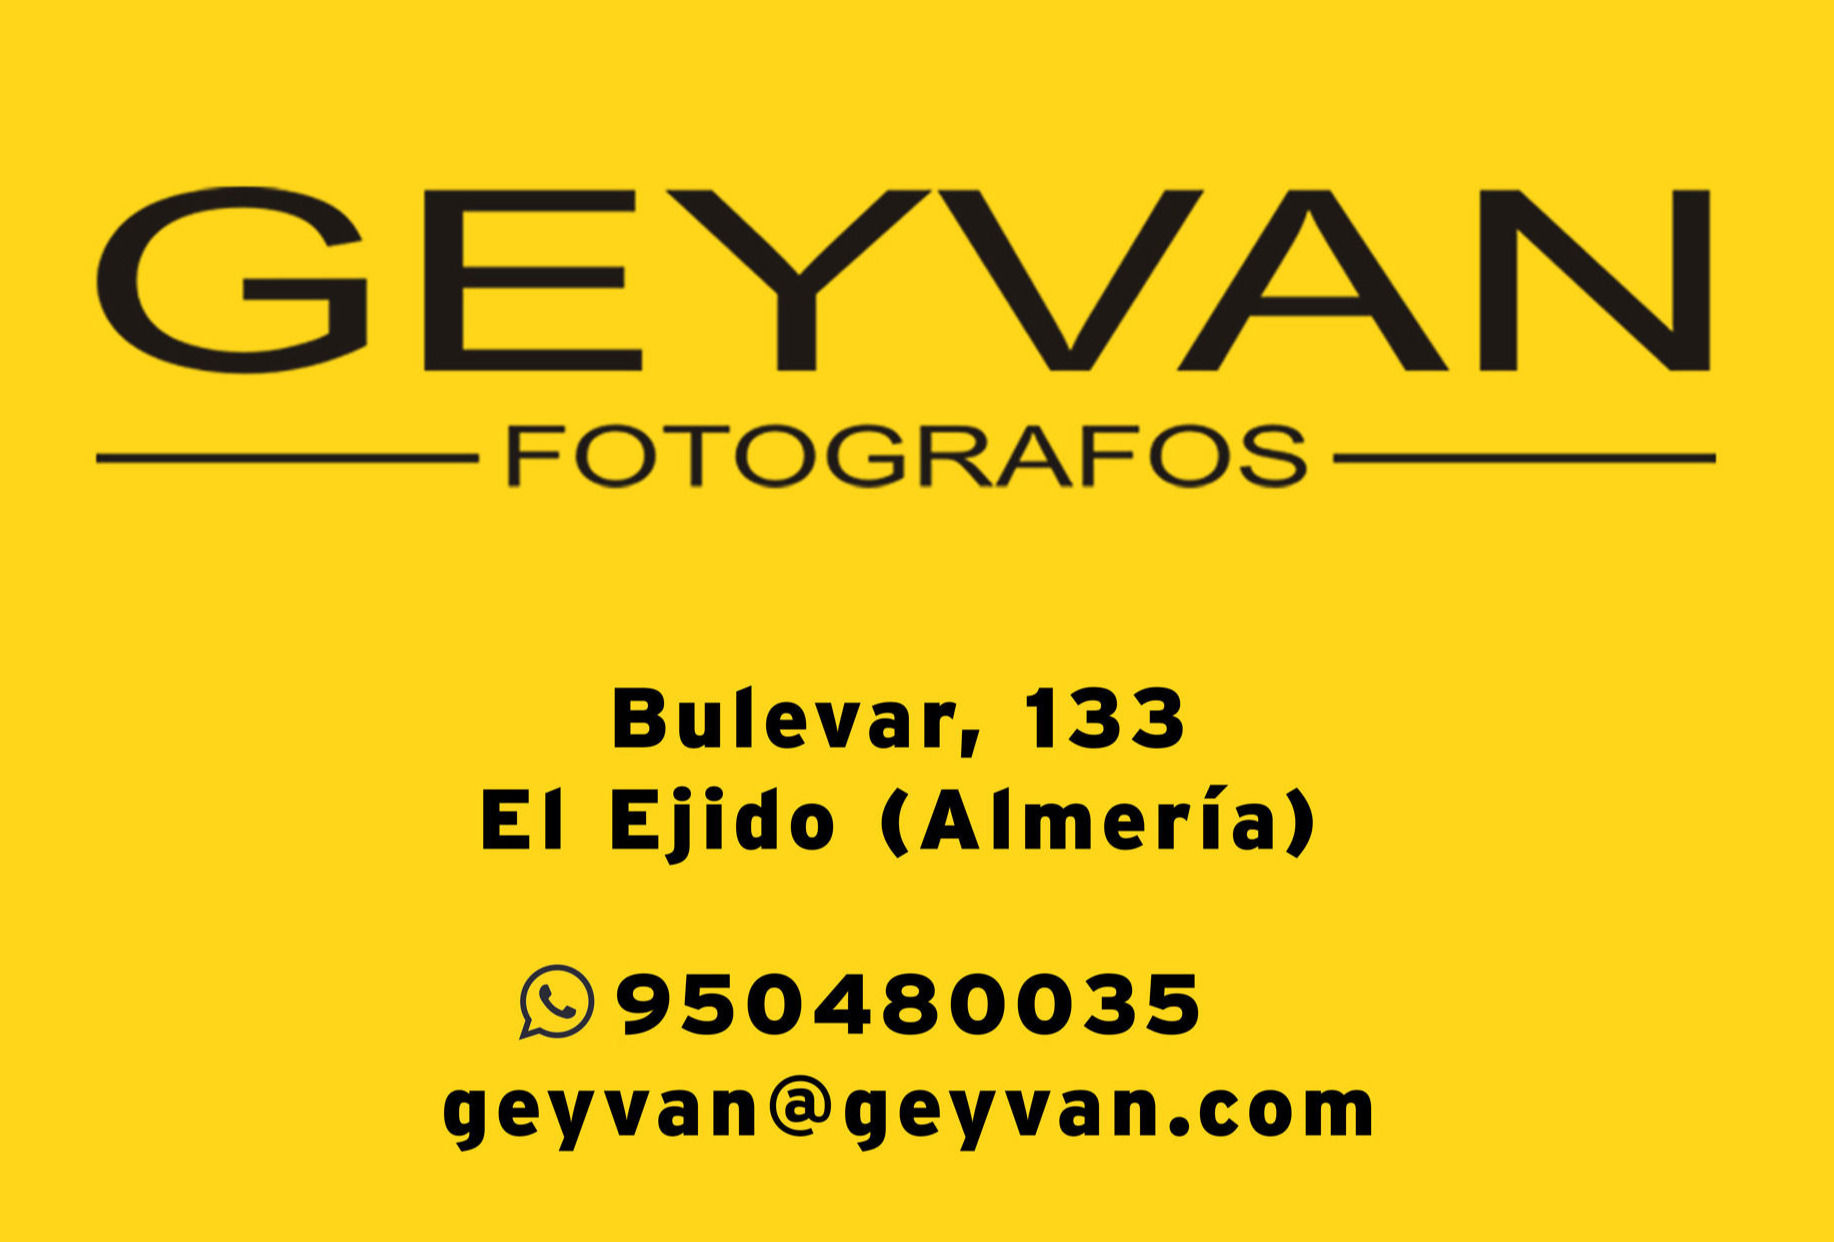 AFPAL (Asociación de Fotógrafos y Videógrafos de Almería) - logo-geyvan-2020.jpg